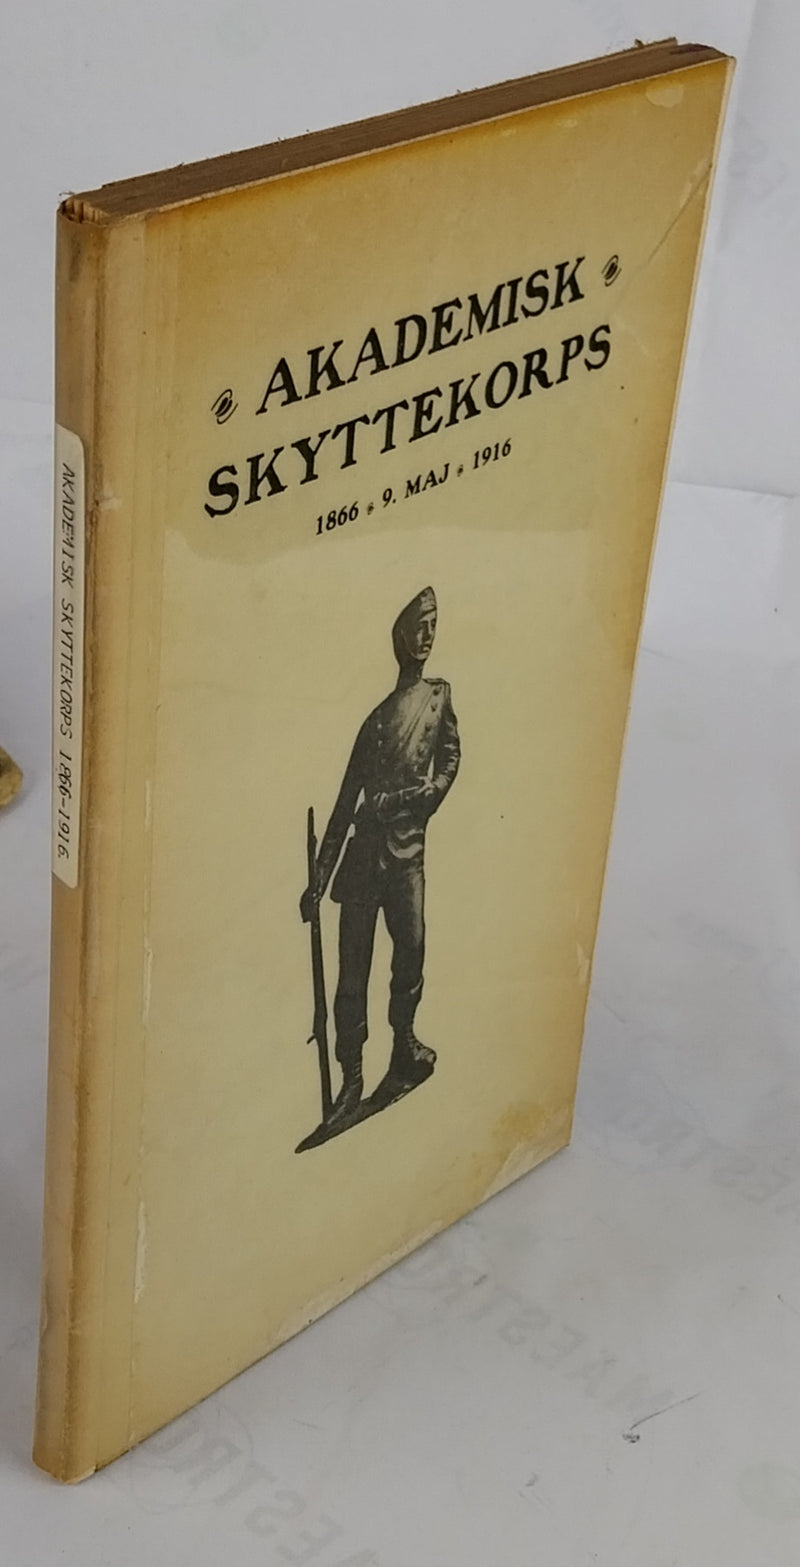 Akademisk Skyttekorps. 1866 - 9. maj - 1916.